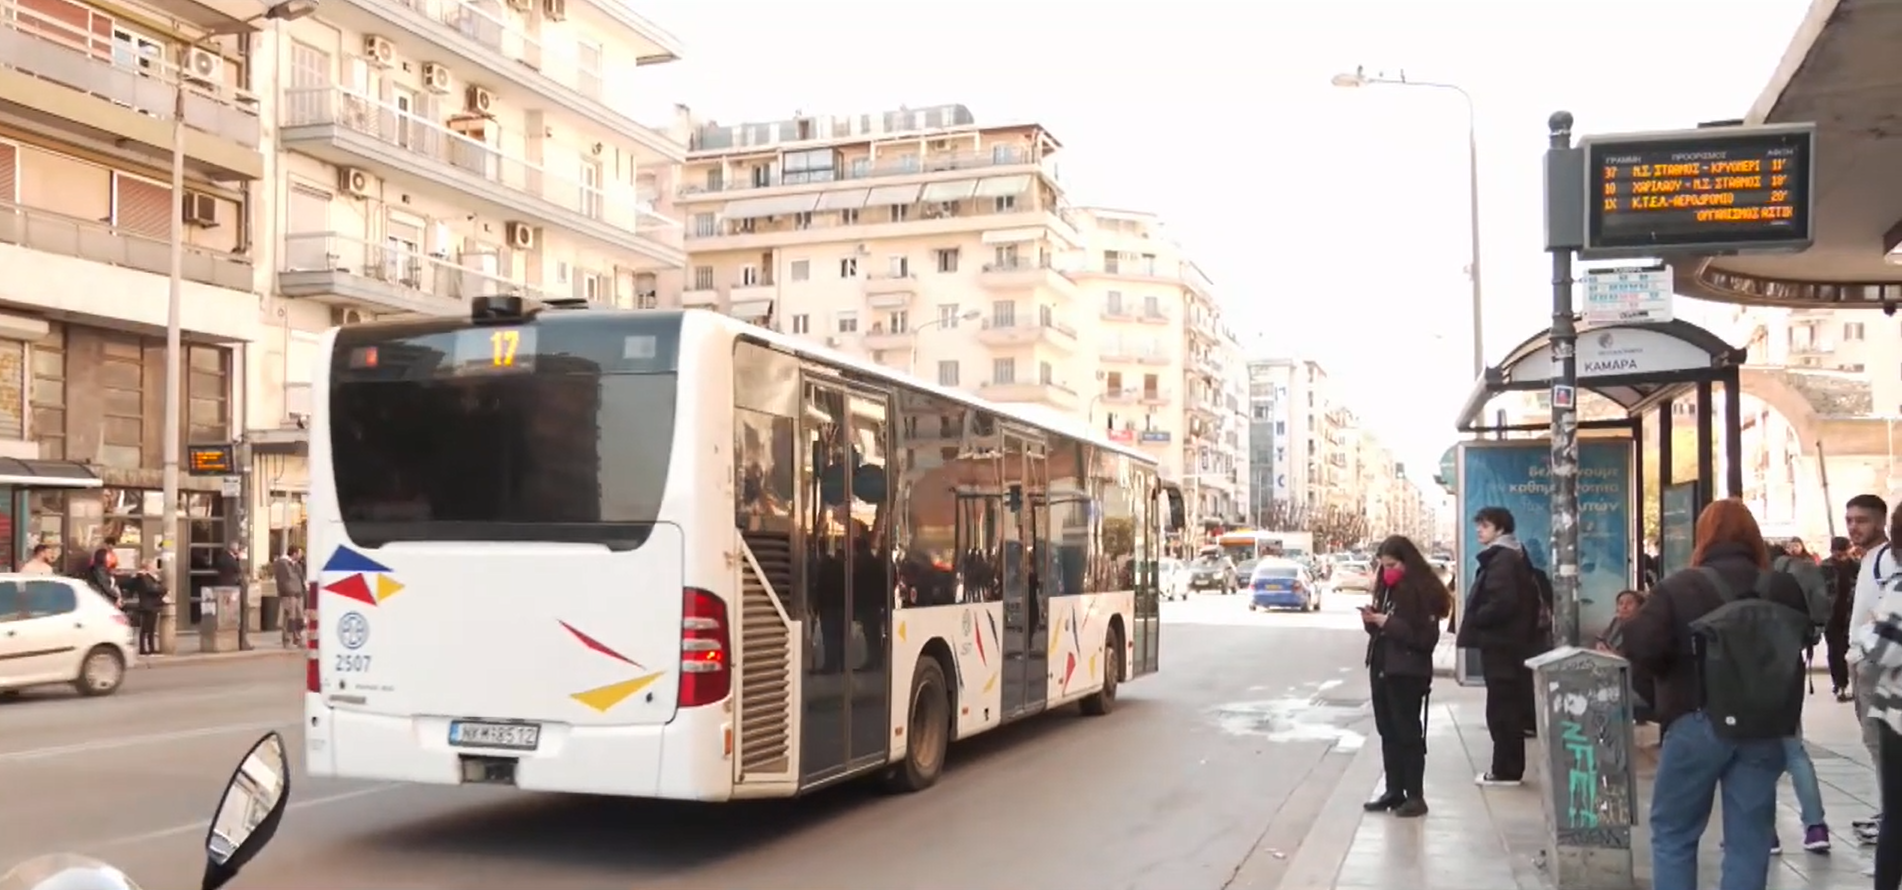 Θεσσαλονίκη: Αυξάνονται τα περιστατικά βλαβών σε λεωφορεία που εκτελούν δρομολόγια του ΟΑΣΘ